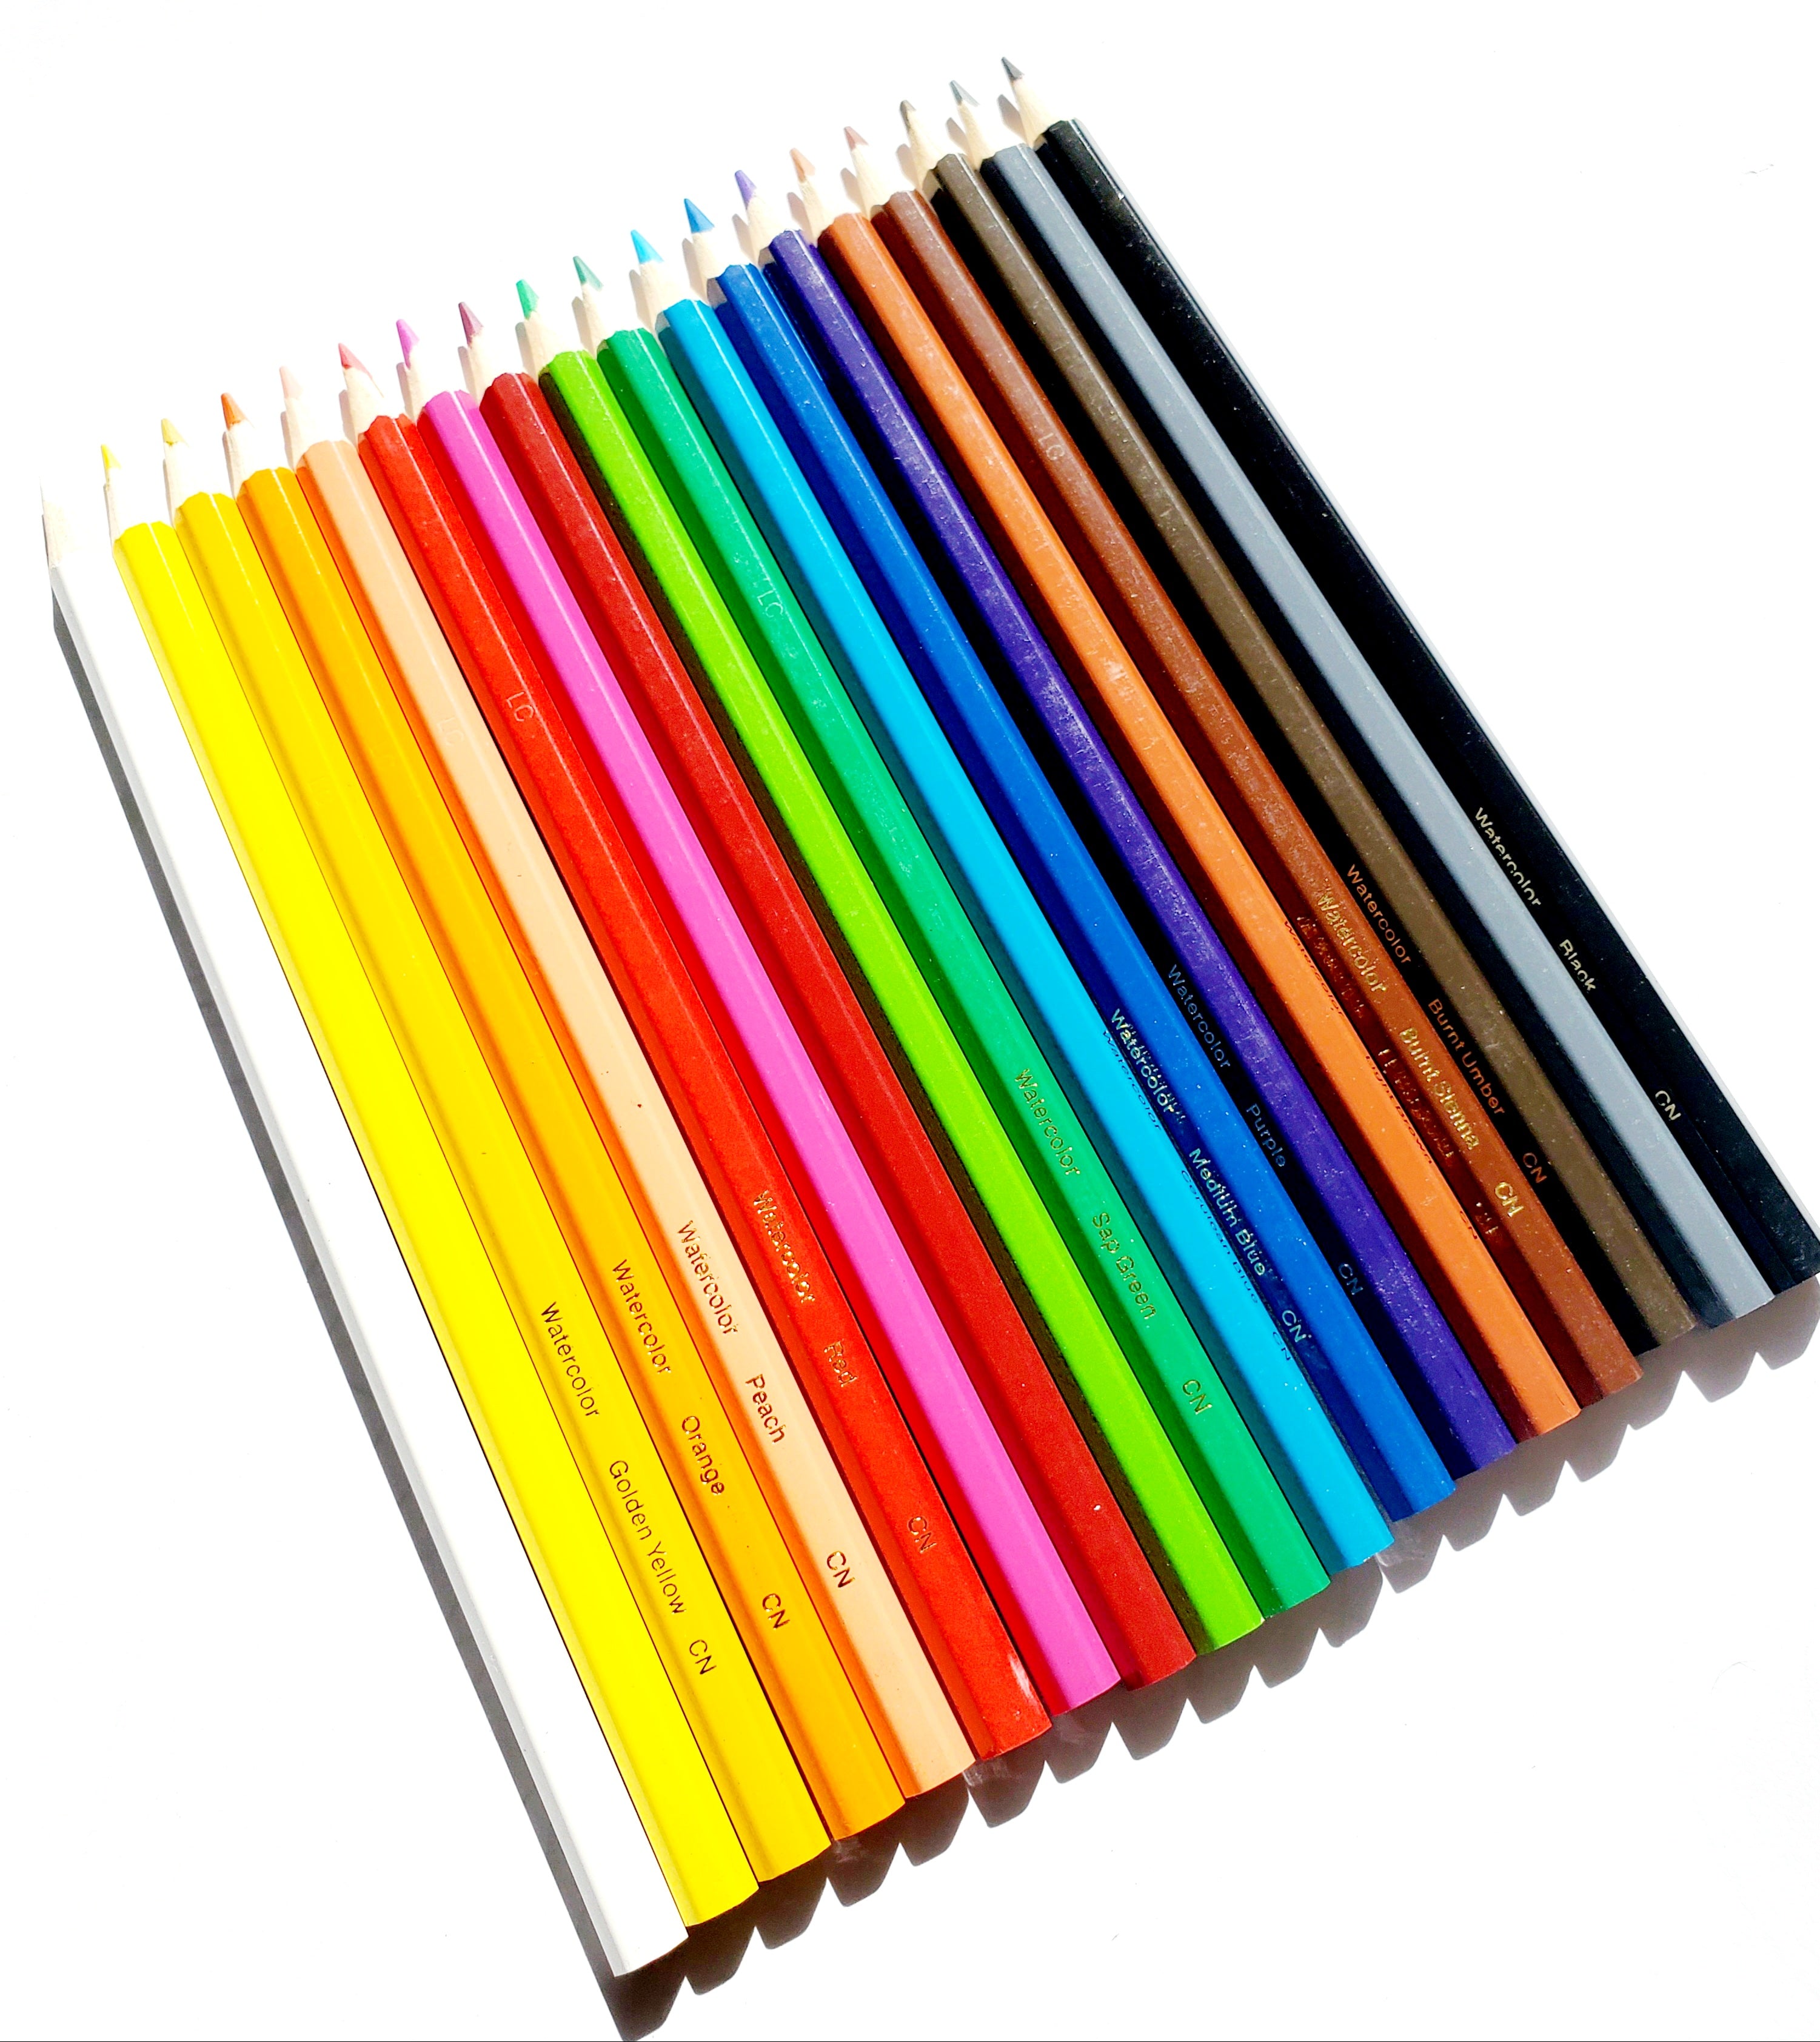 Watercolor Pencil Set, Coloring Supplies, 24ct, Crayola.com